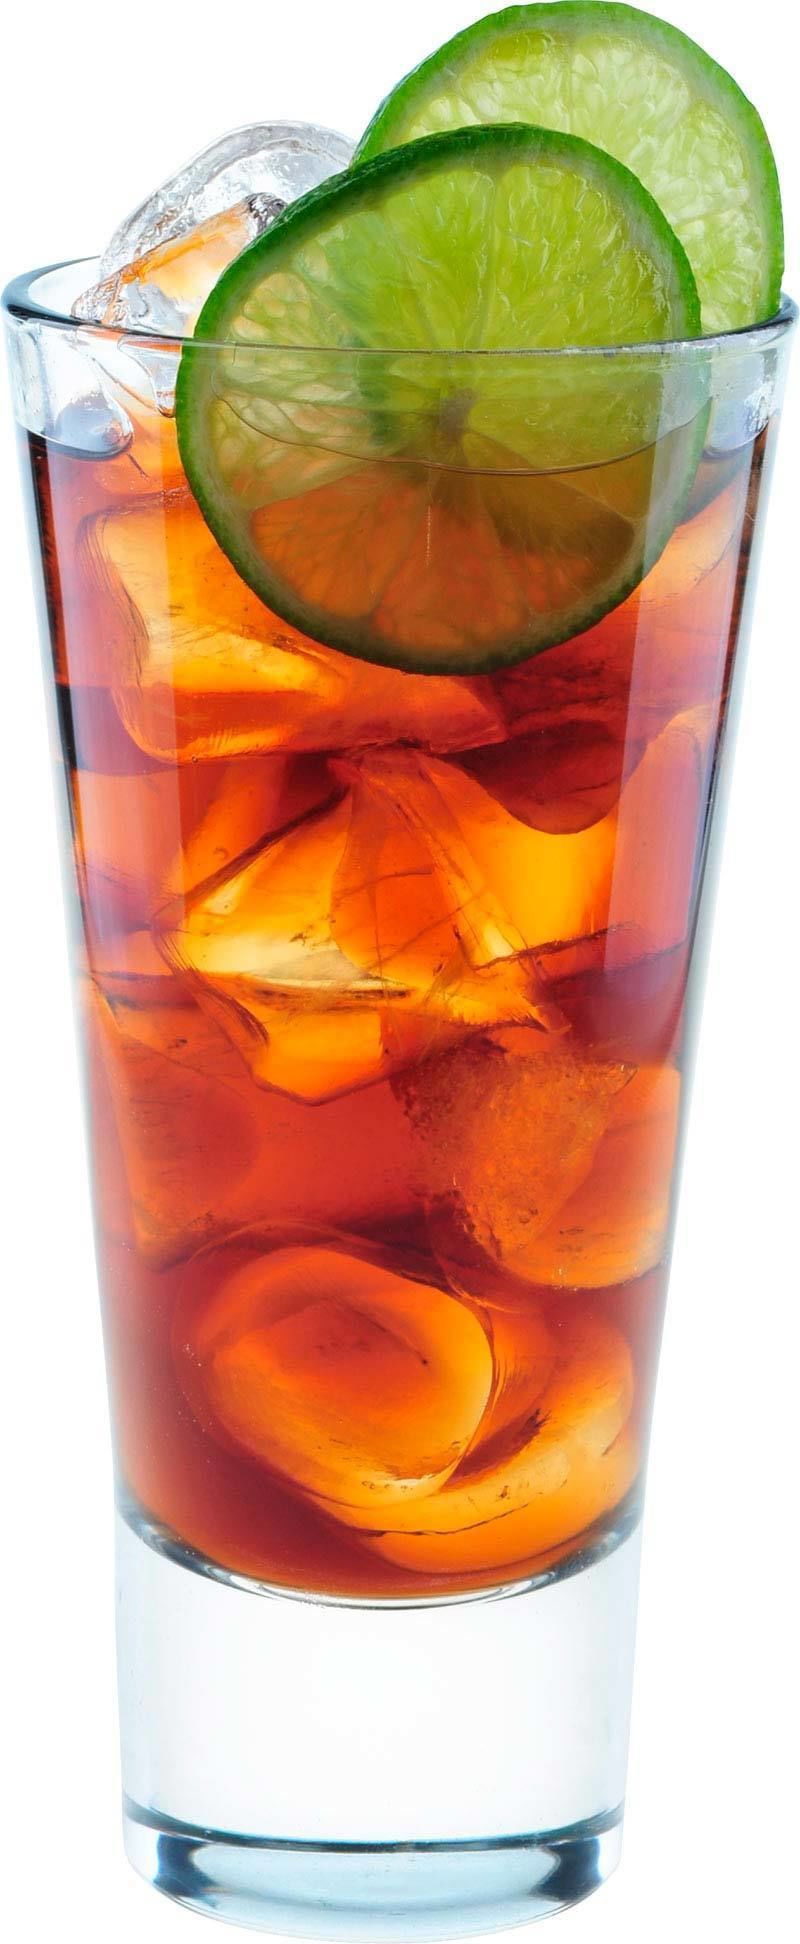 Comment préparer le cocktail Rum and Coke